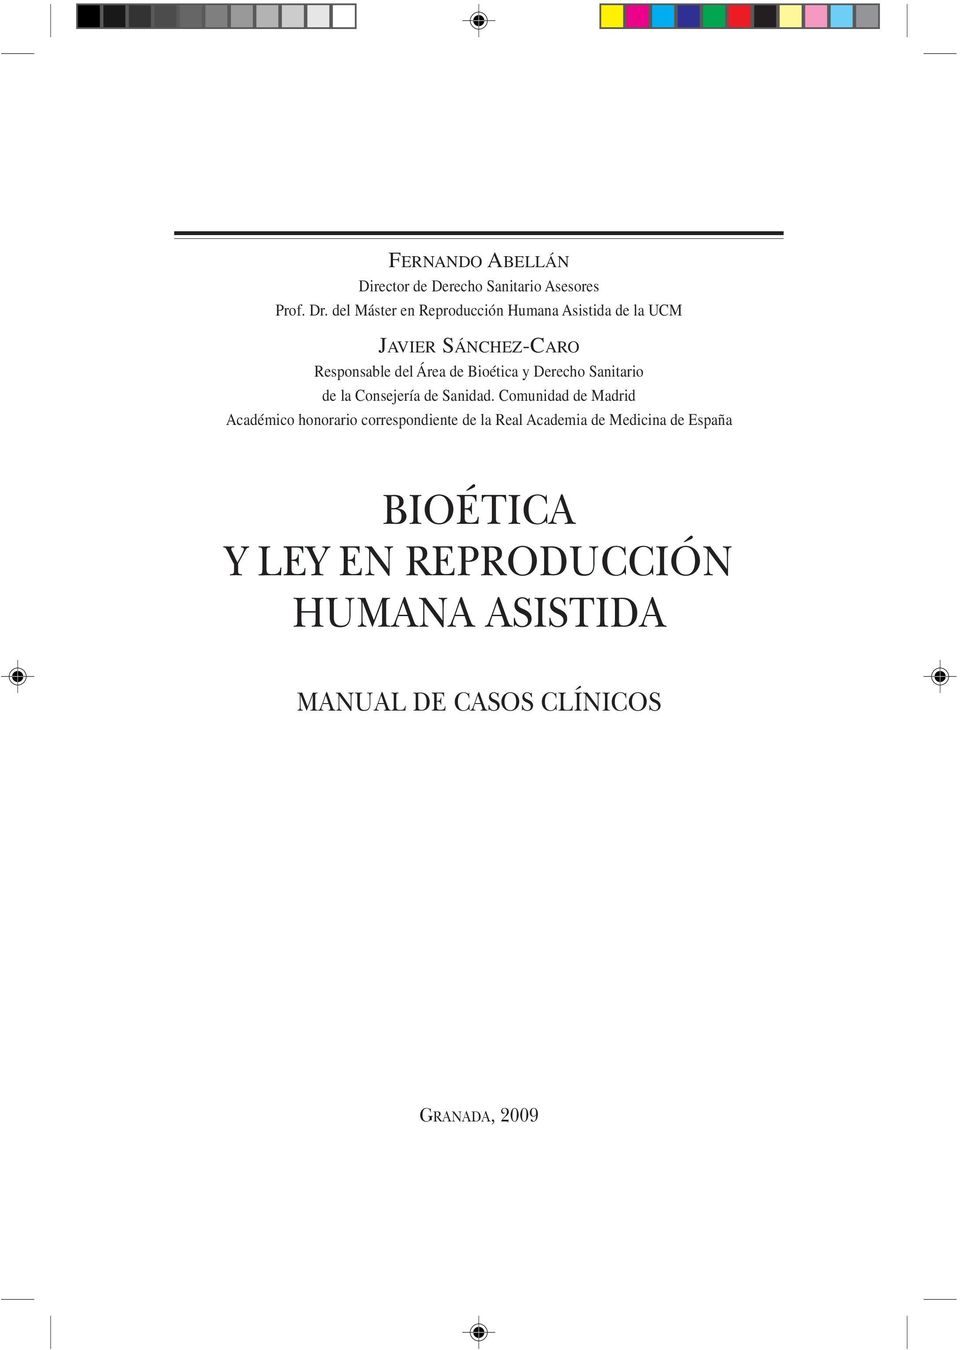 Bioética y Derecho Sanitario de la Consejería de Sanidad.